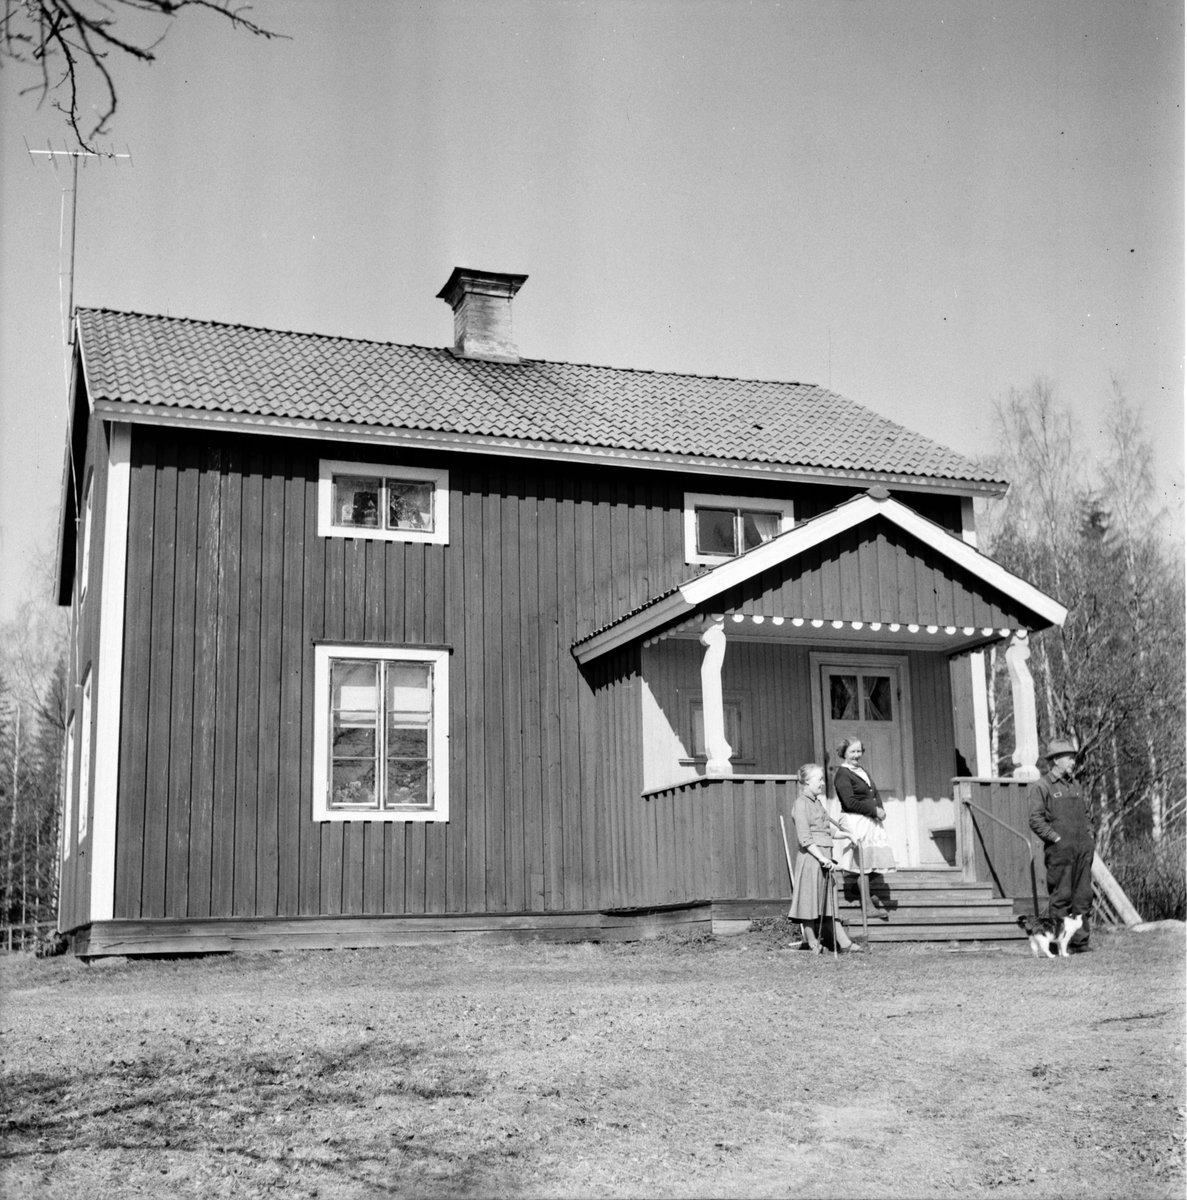 Rygge. Makarna Matilda och Per Blom
Enar Jacobson
6/5-1965